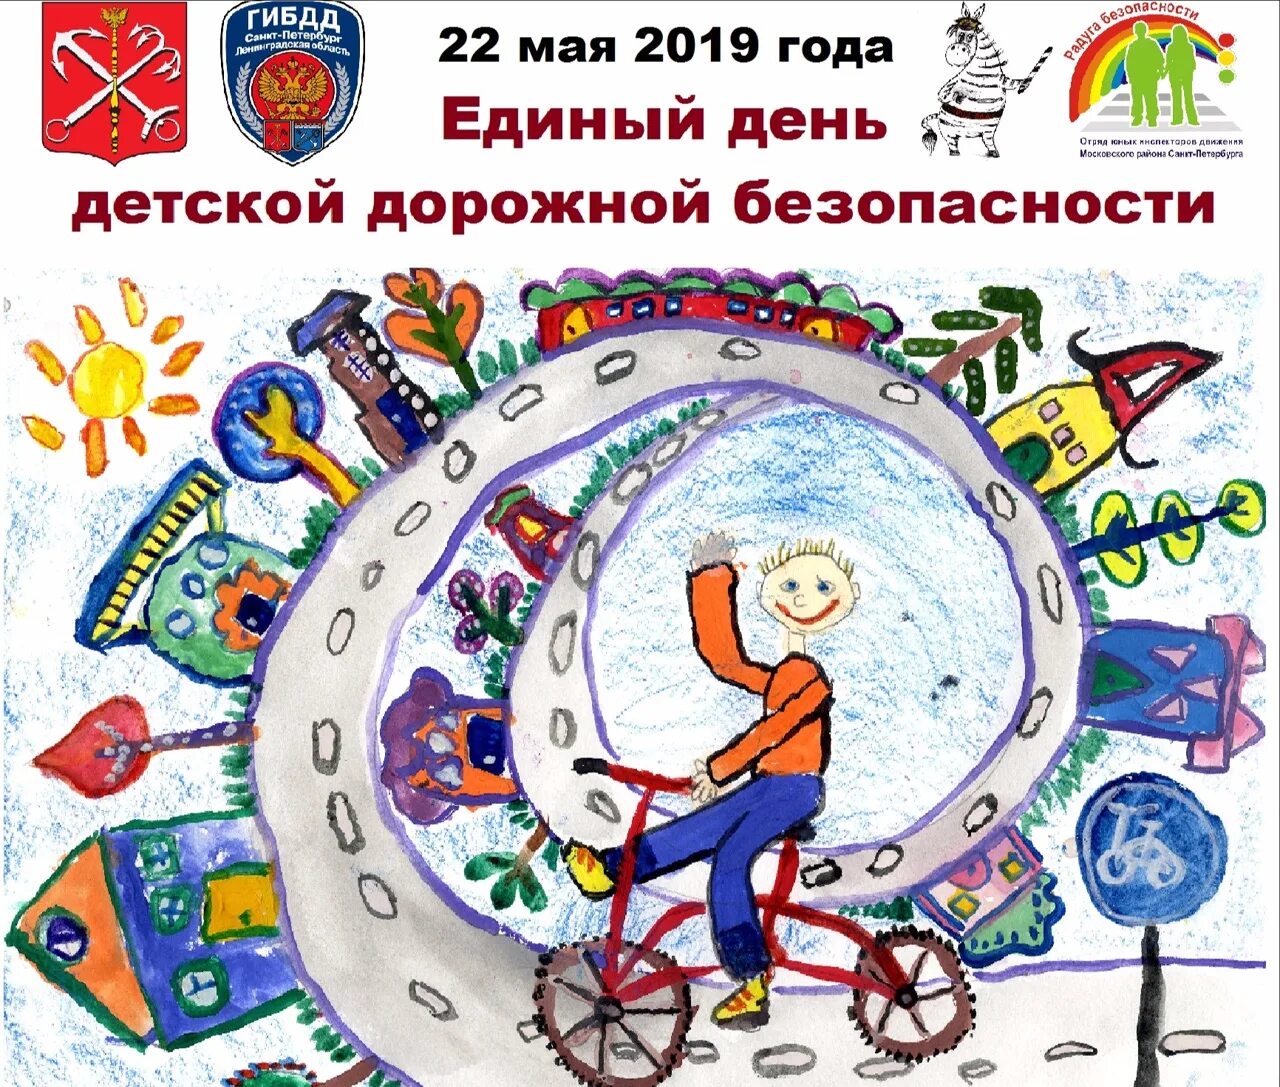 Нов 20 мая. Единый день детской дорожной безопасности в Санкт-Петербурге. День безопасности. Всемирный день дорожной безопасности. Единый день ПДД.